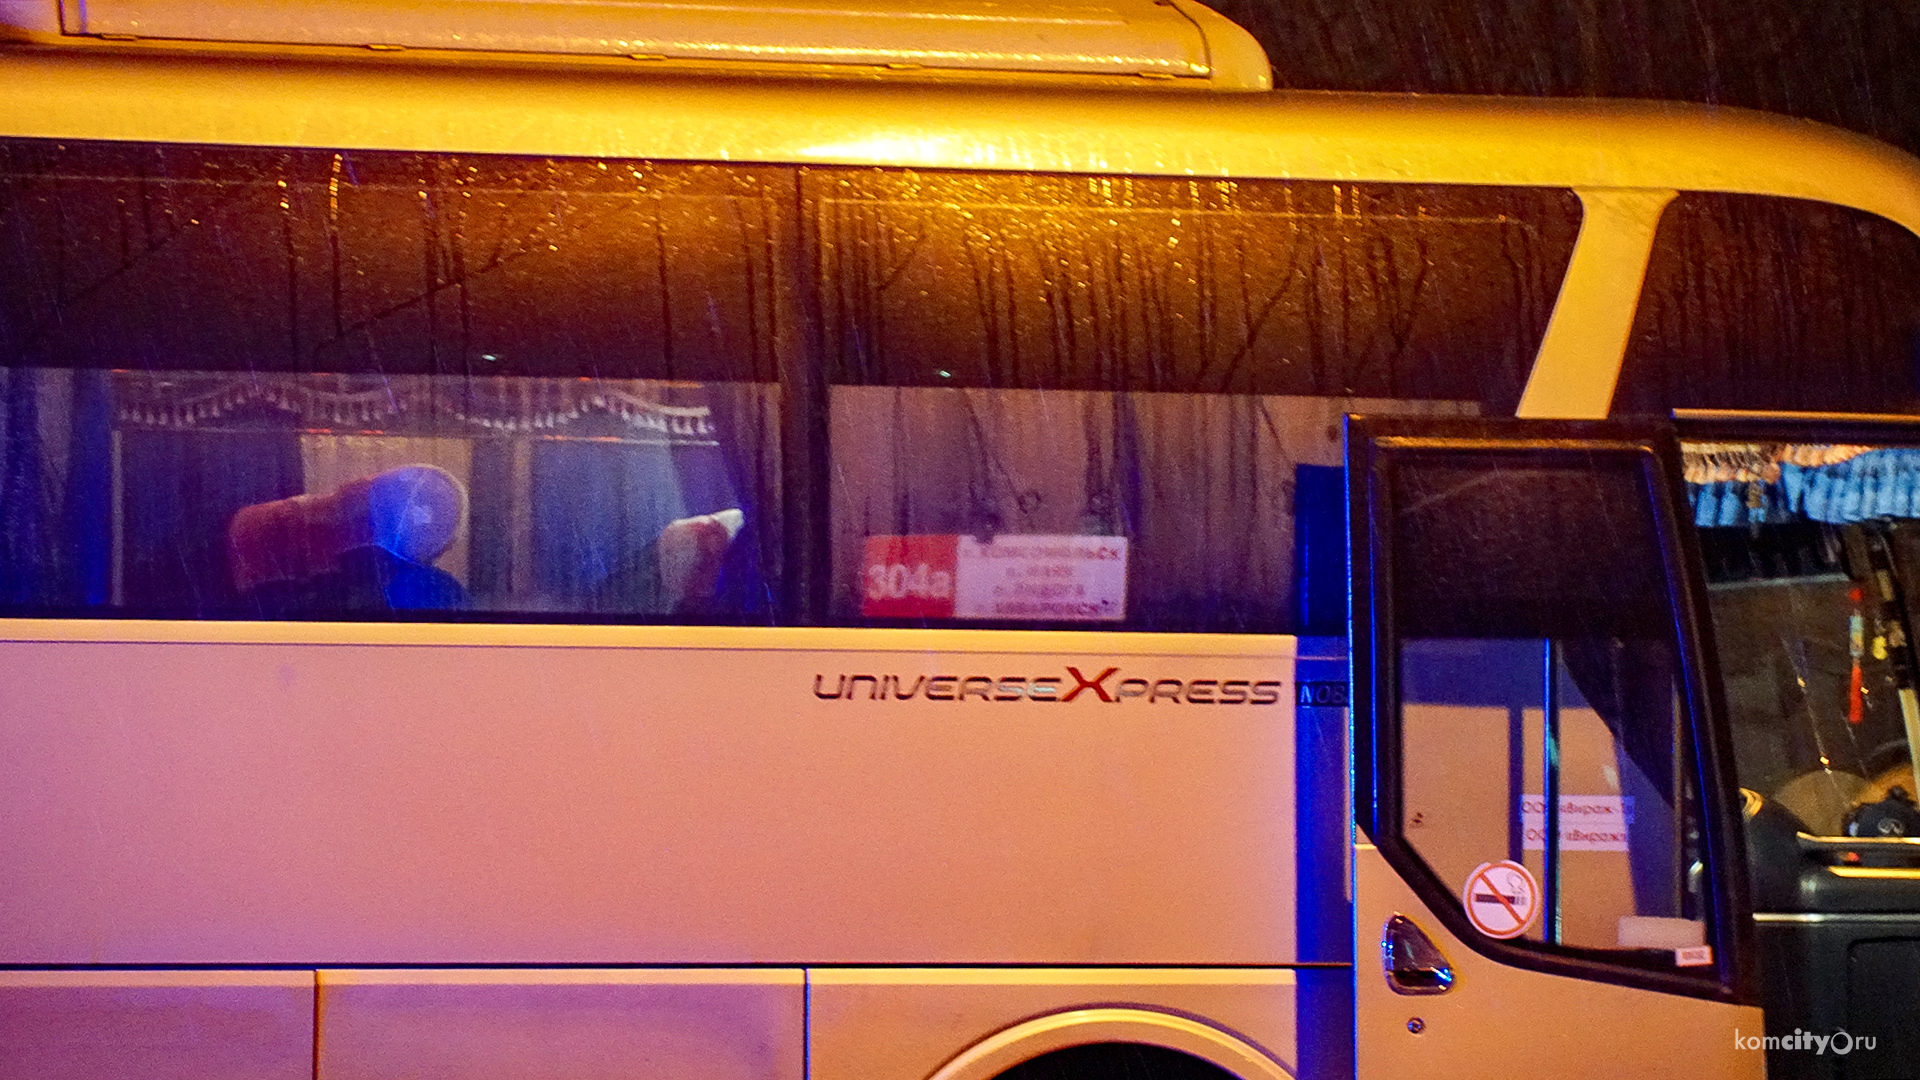 Междугородные автобусы Хабаровск — Комсомольск-на-Амуре перестали высаживать пассажиров в центре города